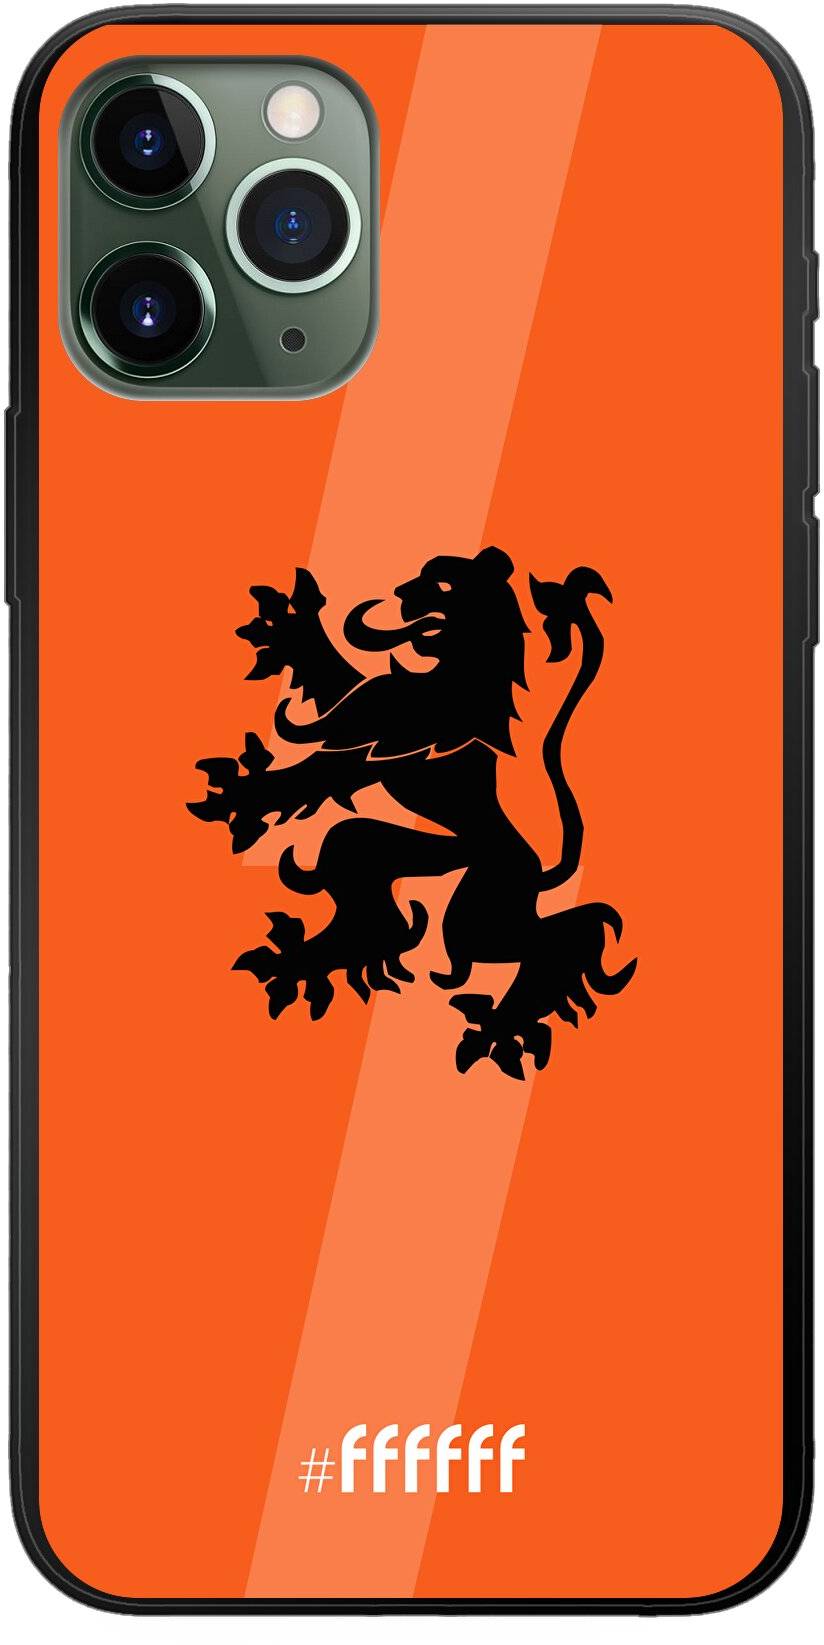 Nederlands Elftal iPhone 11 Pro